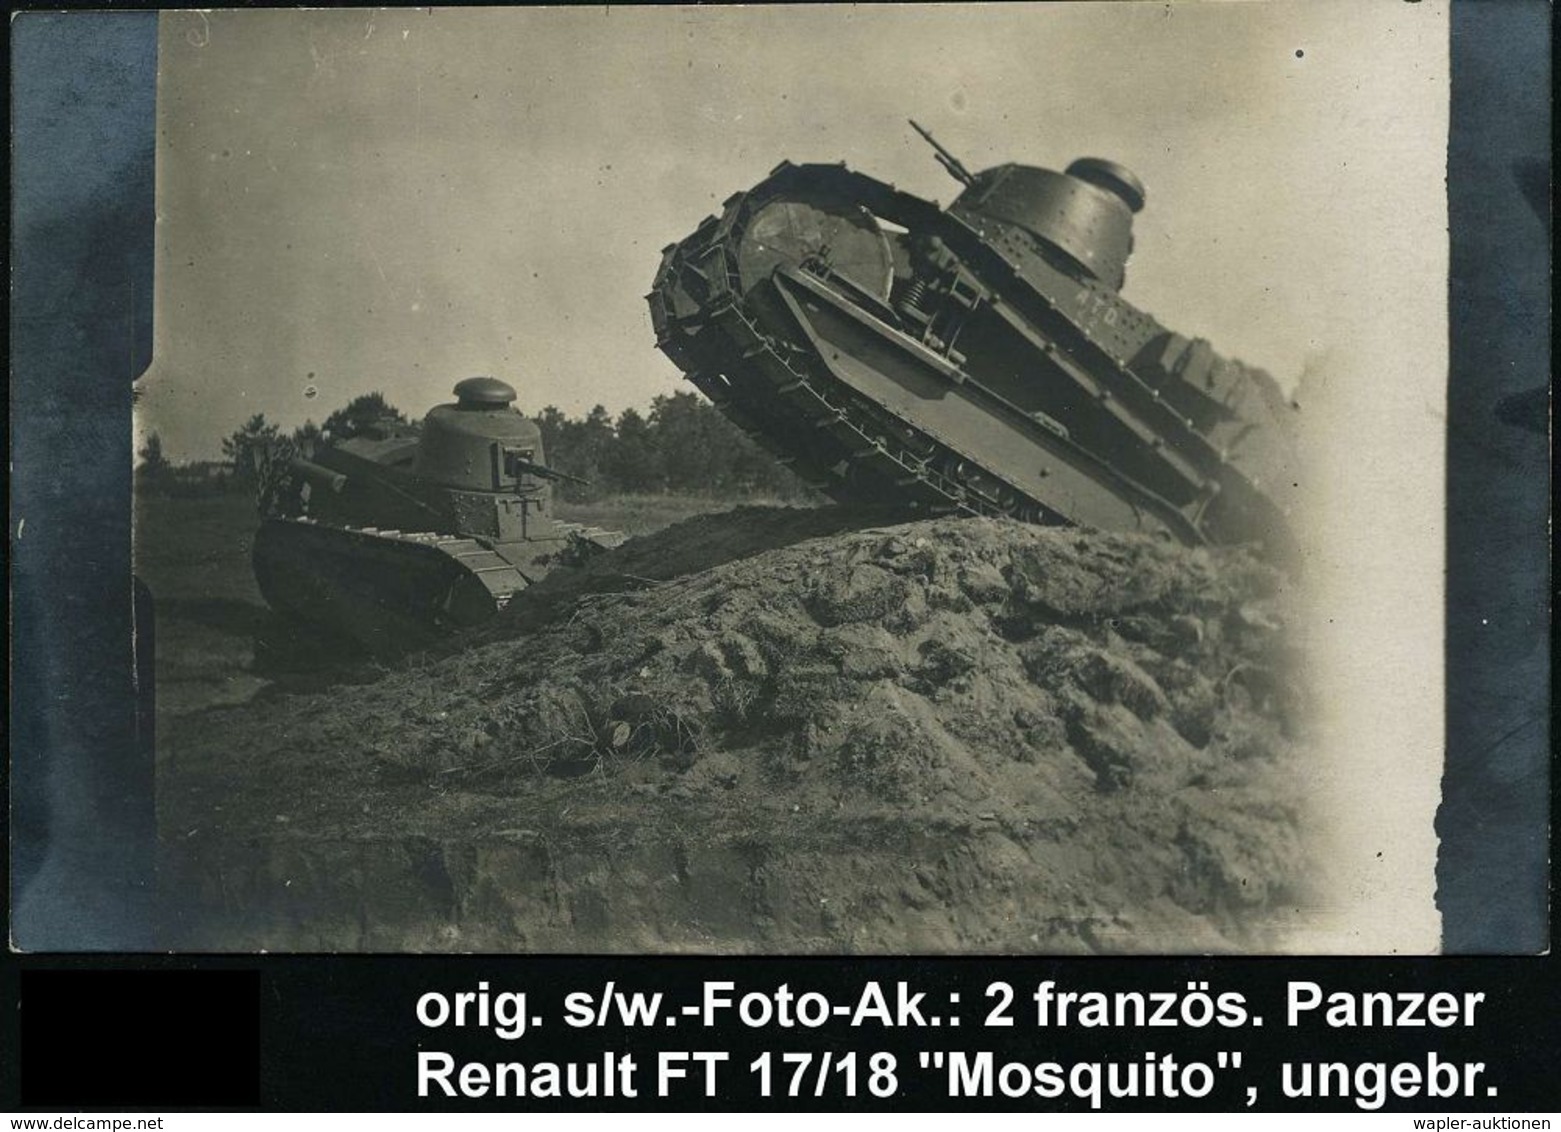 GEPANZERTE KRAFTFAHRZEUGE / PANZER : FRANKREICH 1917 S/w.-Foto-Ak: 2 Französ. Panzer Renault "Mosquito FT 17/18" Bei Der - Altri (Terra)